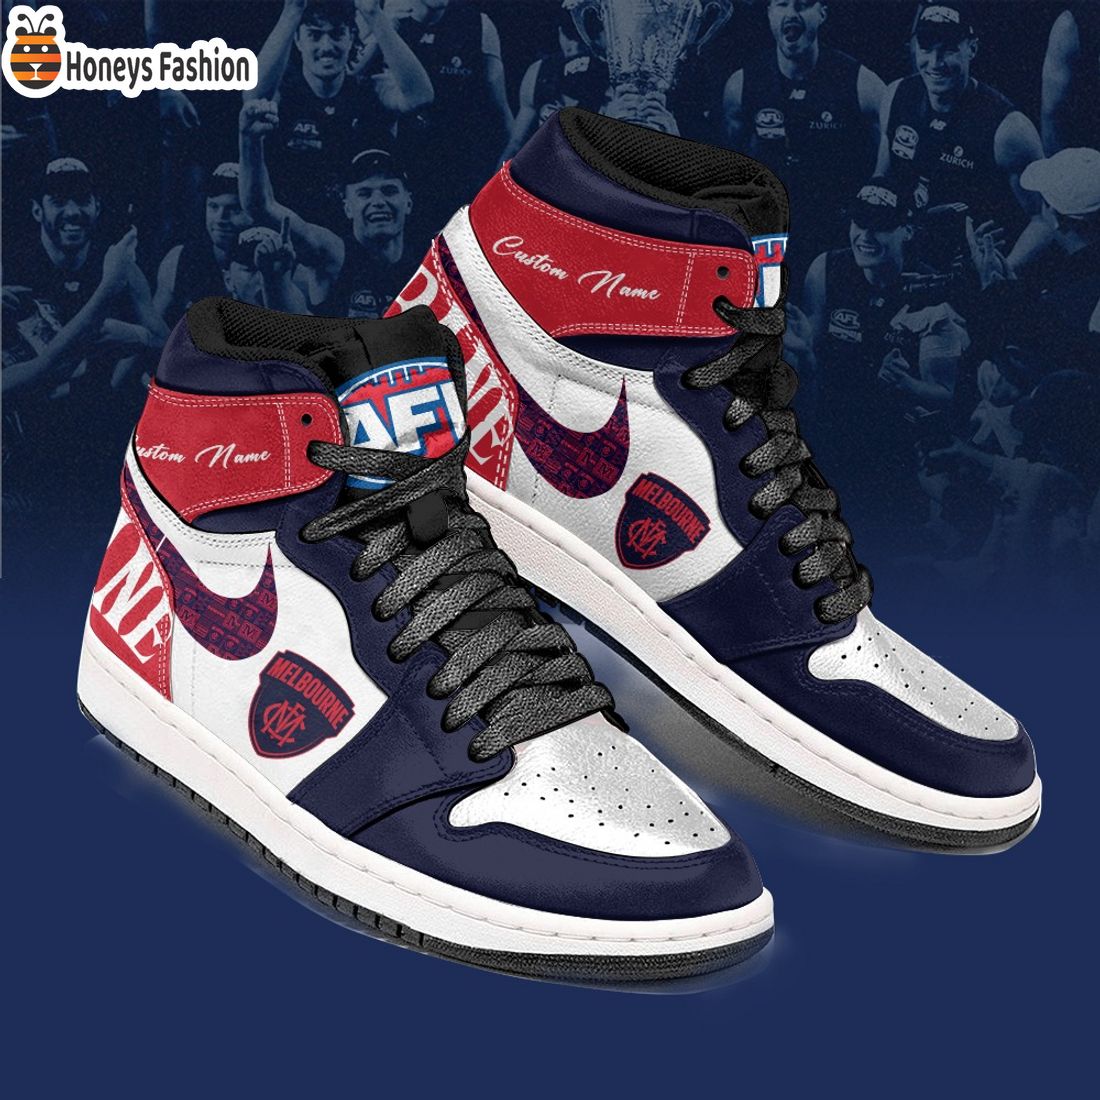 Melbourne Demons Football Club Custom Name Air Jordan 1 Sneaker